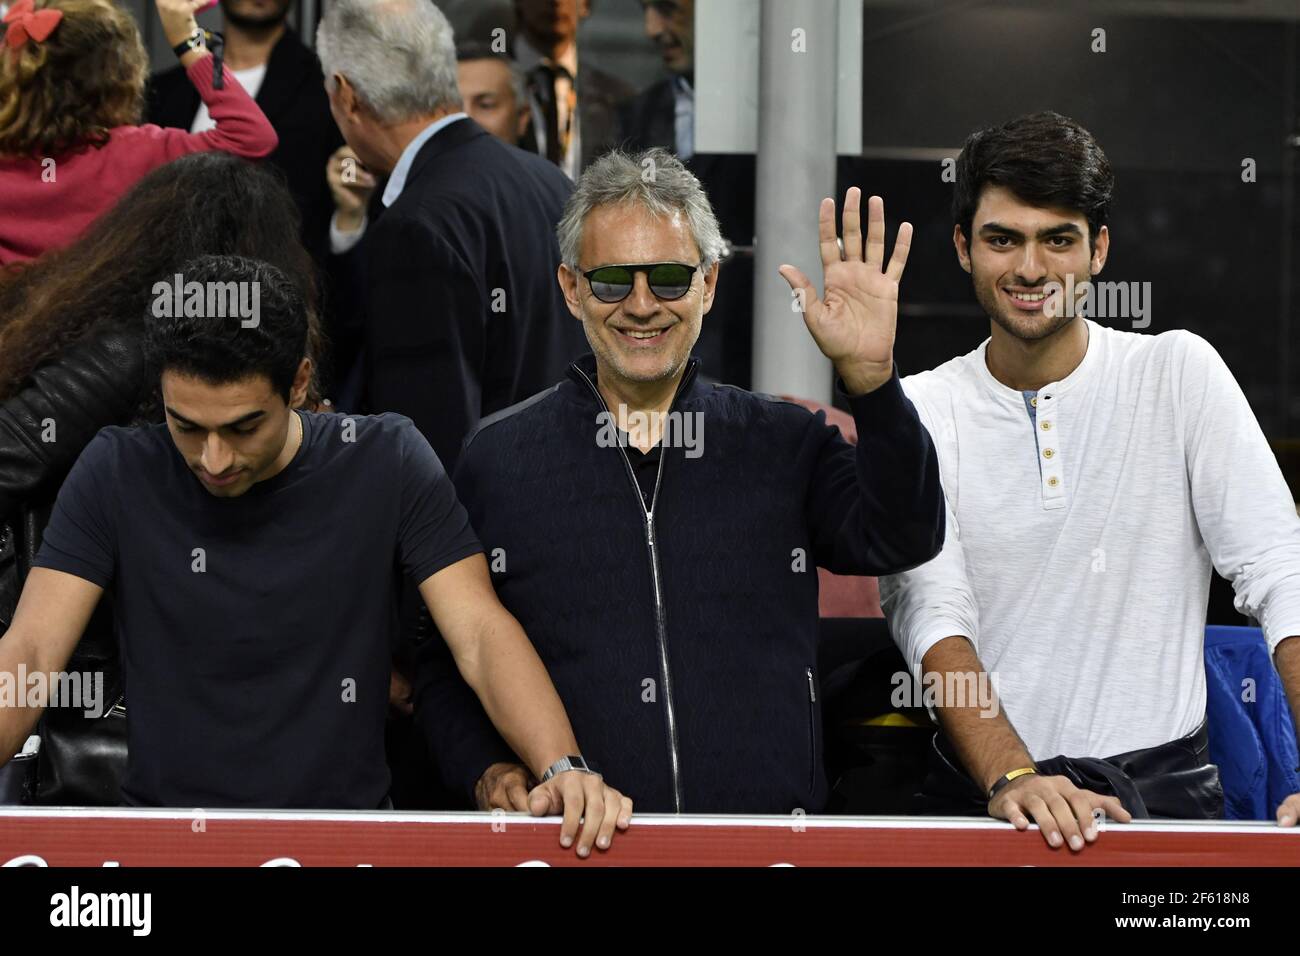 La cantante de ópera y pop italiana Andrea Bocelli, con sus hijos Amos y Matteo, asiste a un partido de fútbol en el estadio de San Siro en Milán. Foto de stock